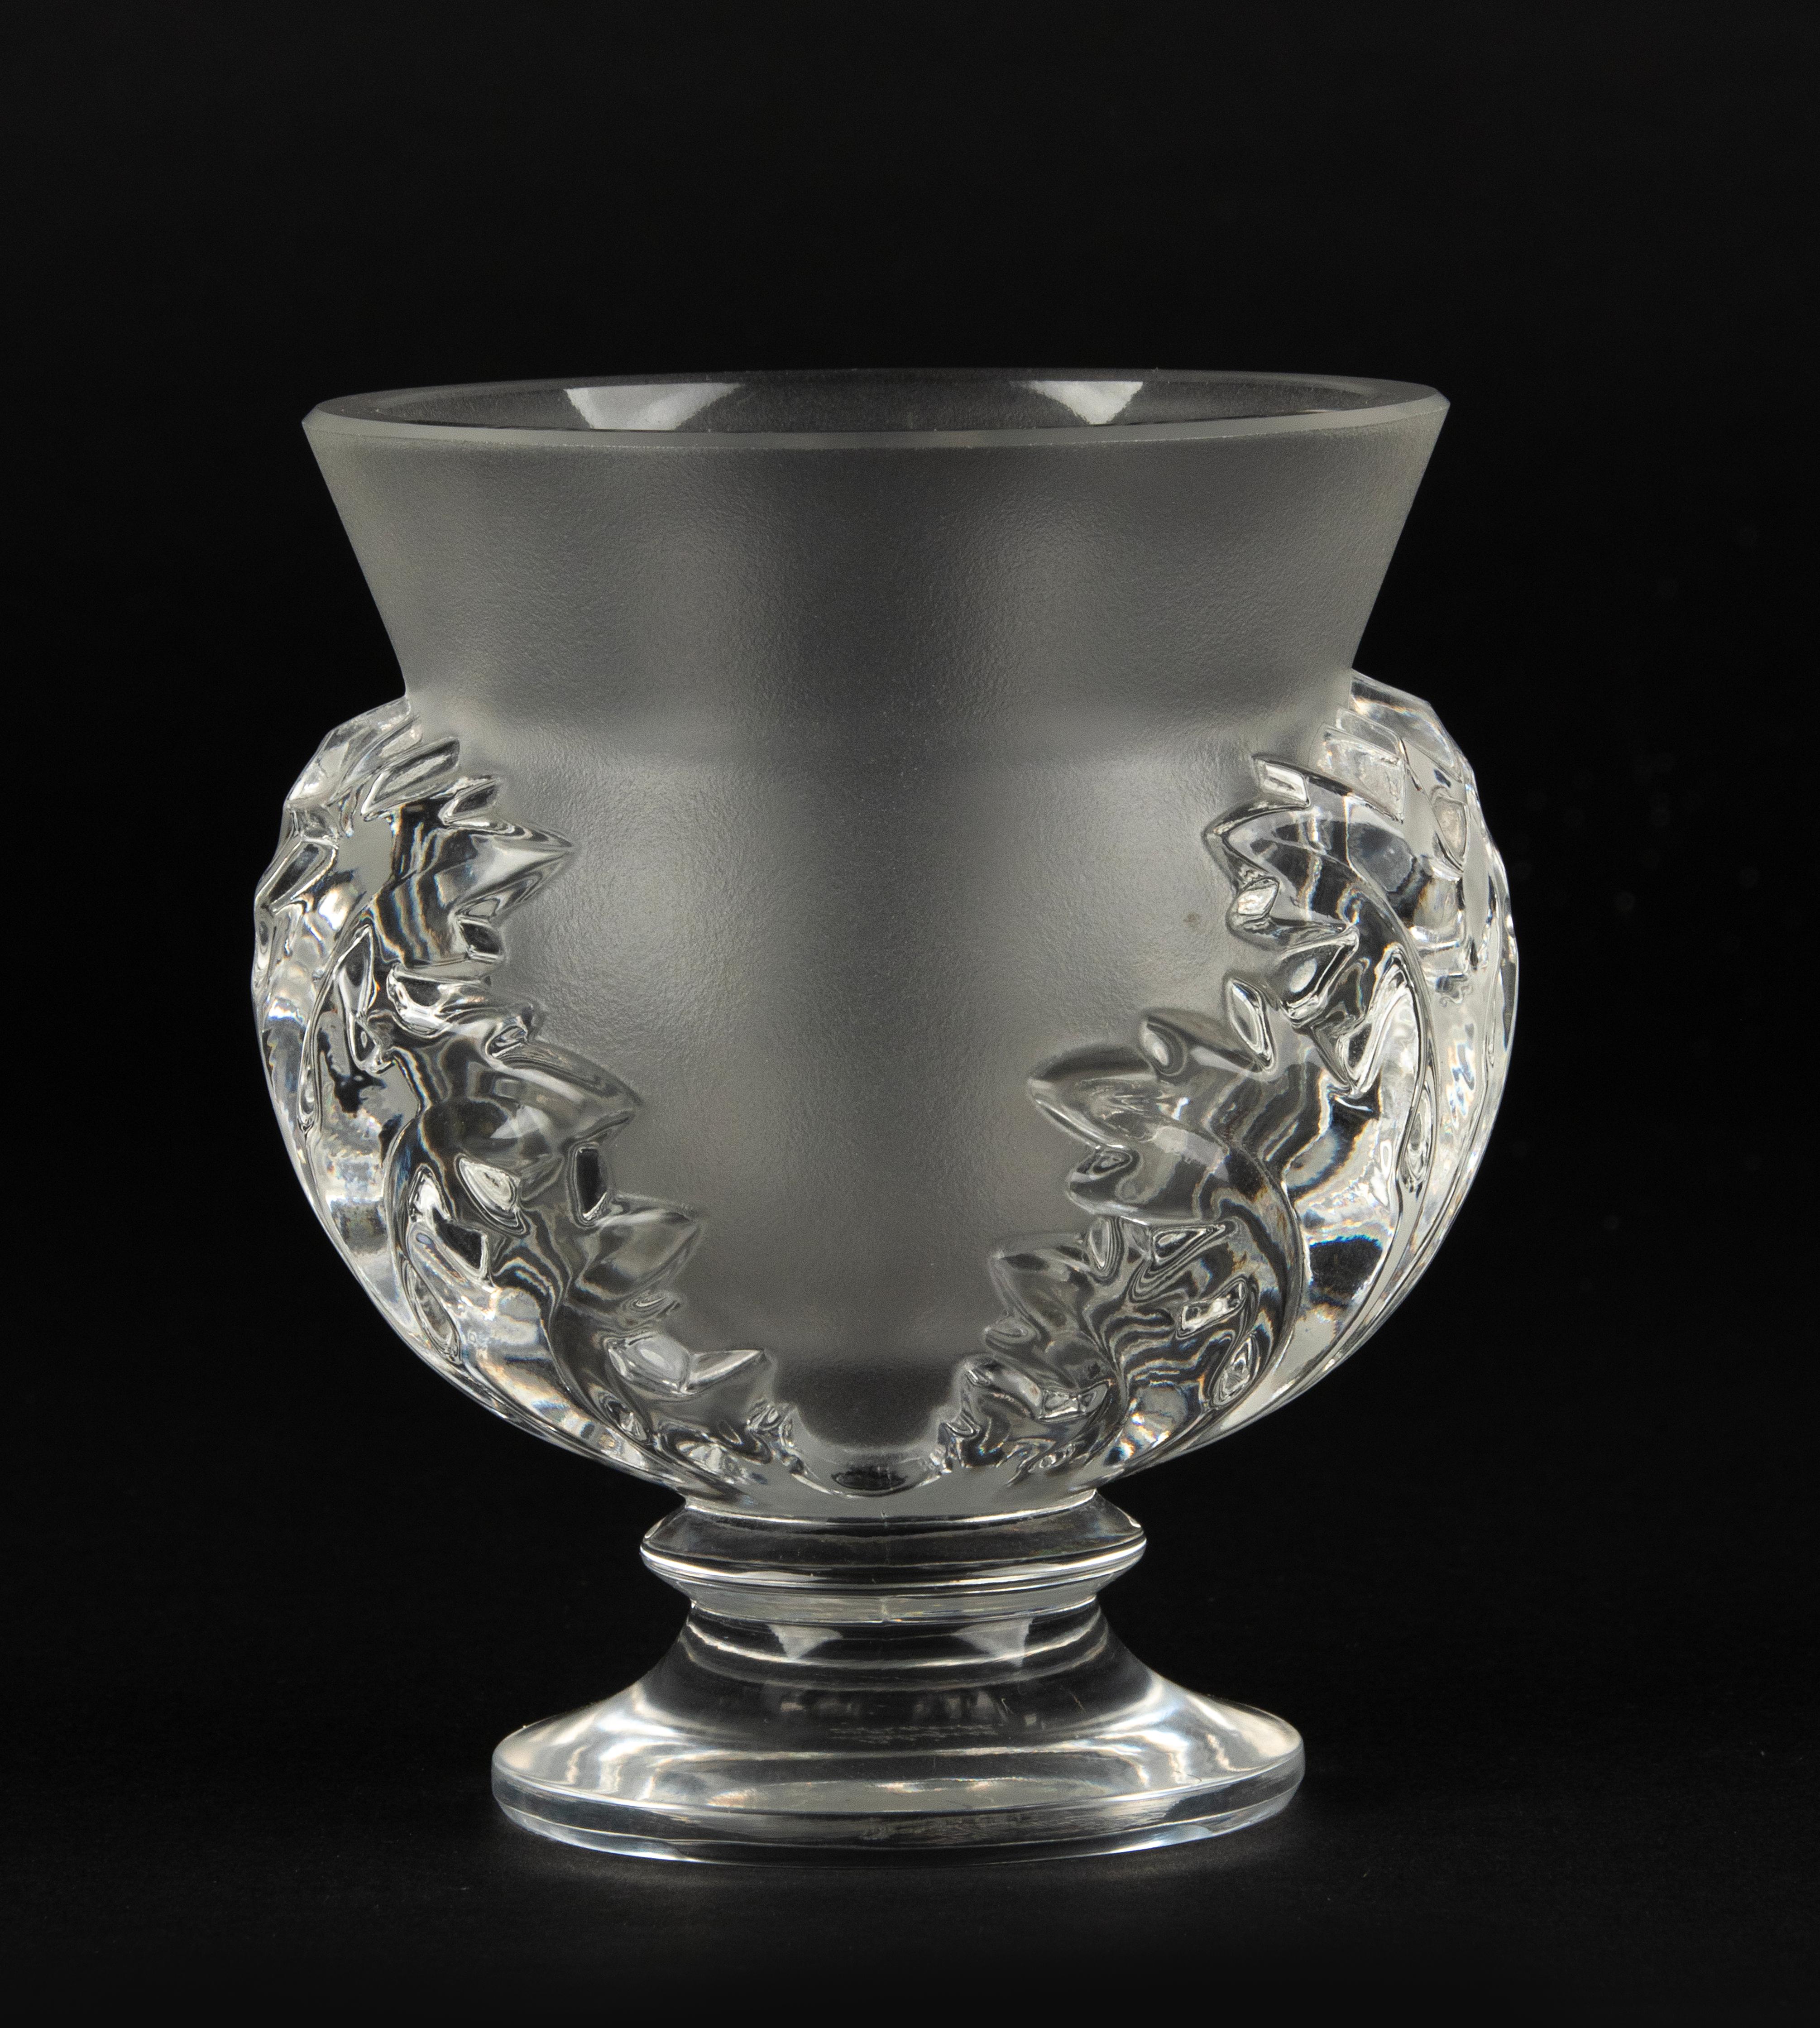 Eine schöne kleine Kristallvase der französischen Marke Lalique. 
Der Name des Modells ist Saint Cloud. 
Die Vase ist in sehr gutem Zustand. Keine Chips und keine Haarrisse. 
Signiert auf der Unterseite. 

Abmessungen: 10 x 11 cm und 12 cm